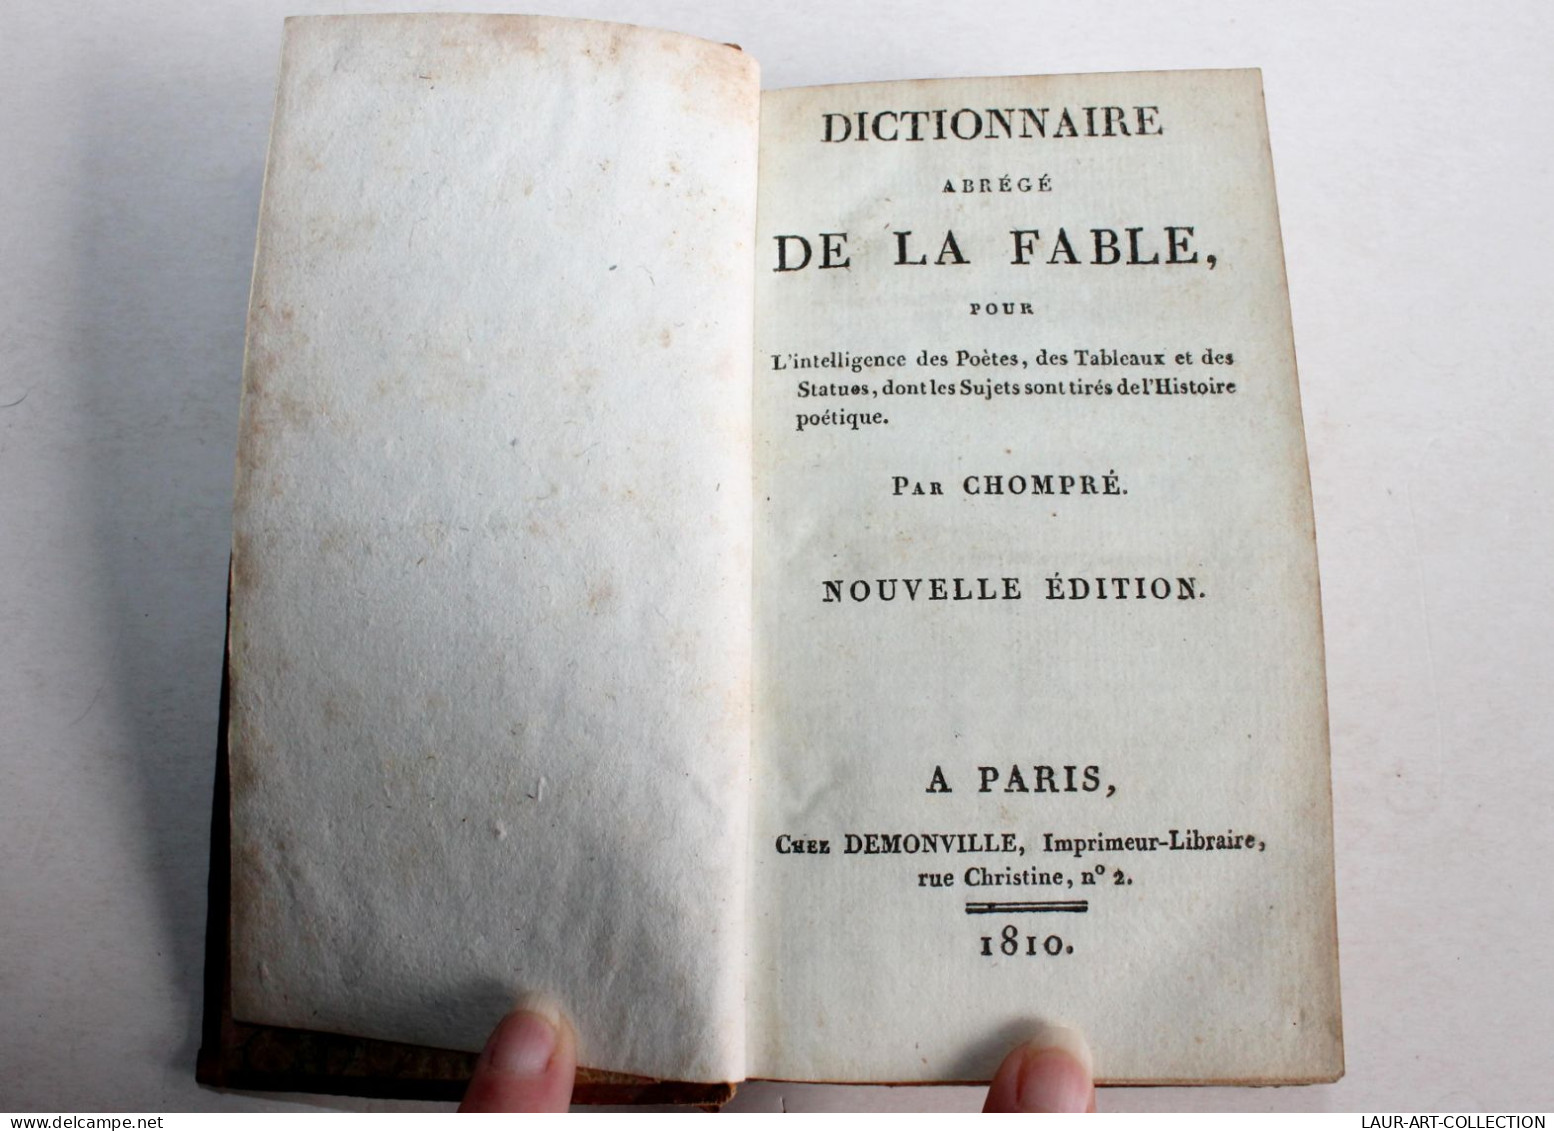 DICTIONNAIRE ABREGE DE LA FABLE Pour DES POETES De CHOMPRE NOUVELLE EDITION 1810 / ANCIEN LIVRE XIXe SIECLE (1803.116) - French Authors